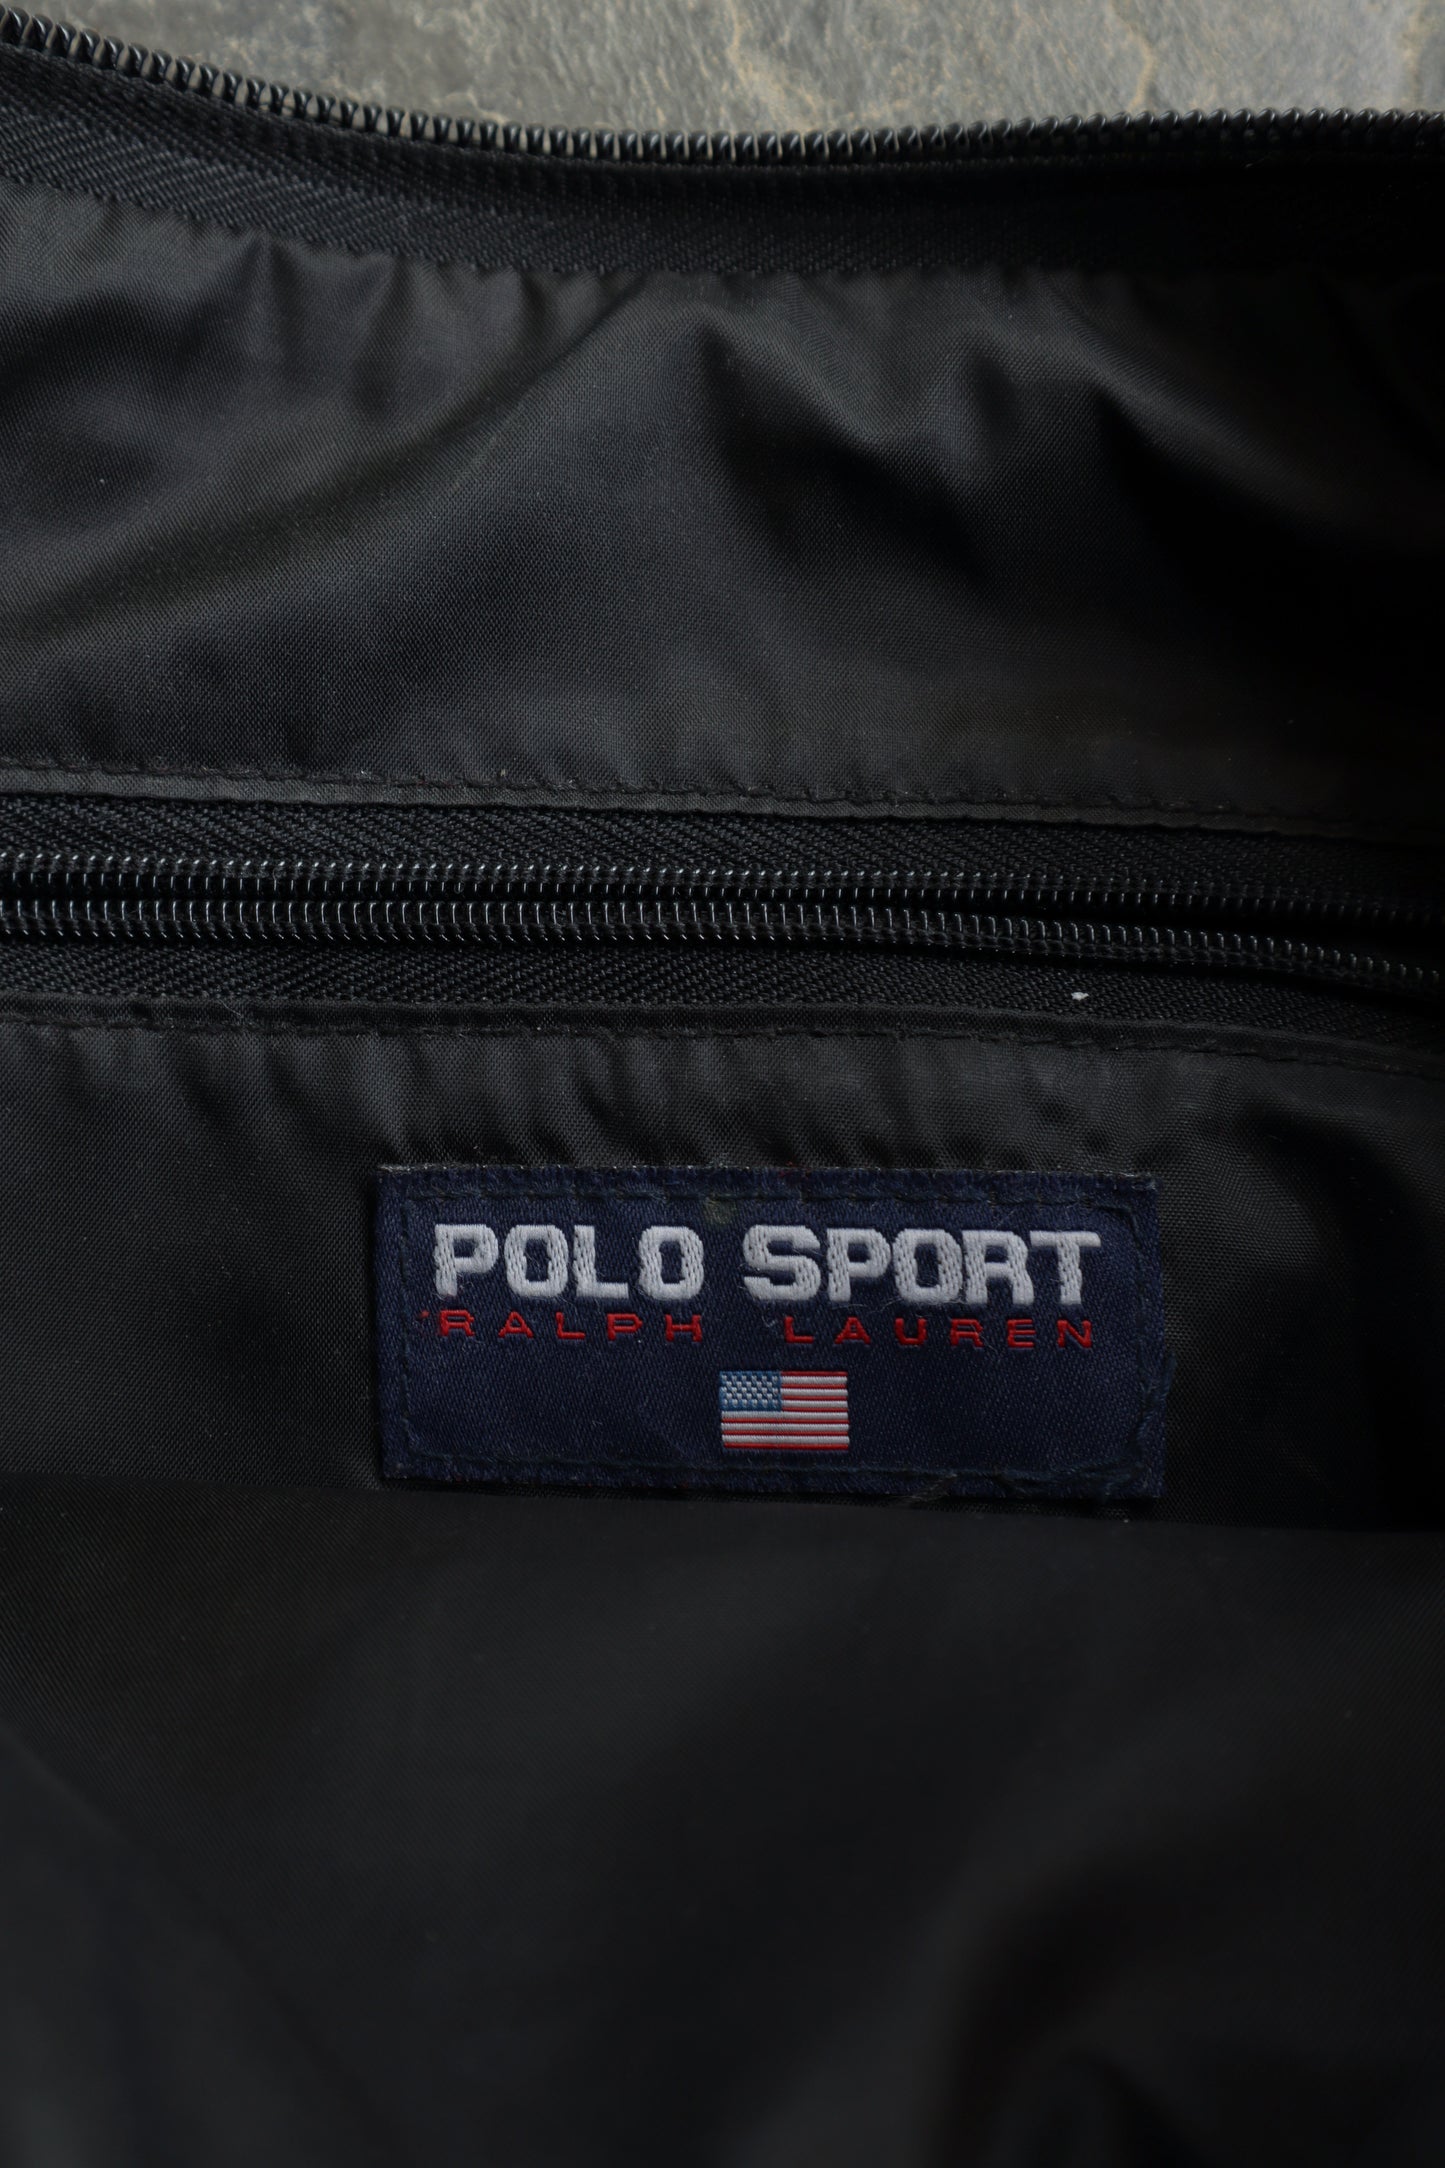 90s Polo Sport Bag - OS